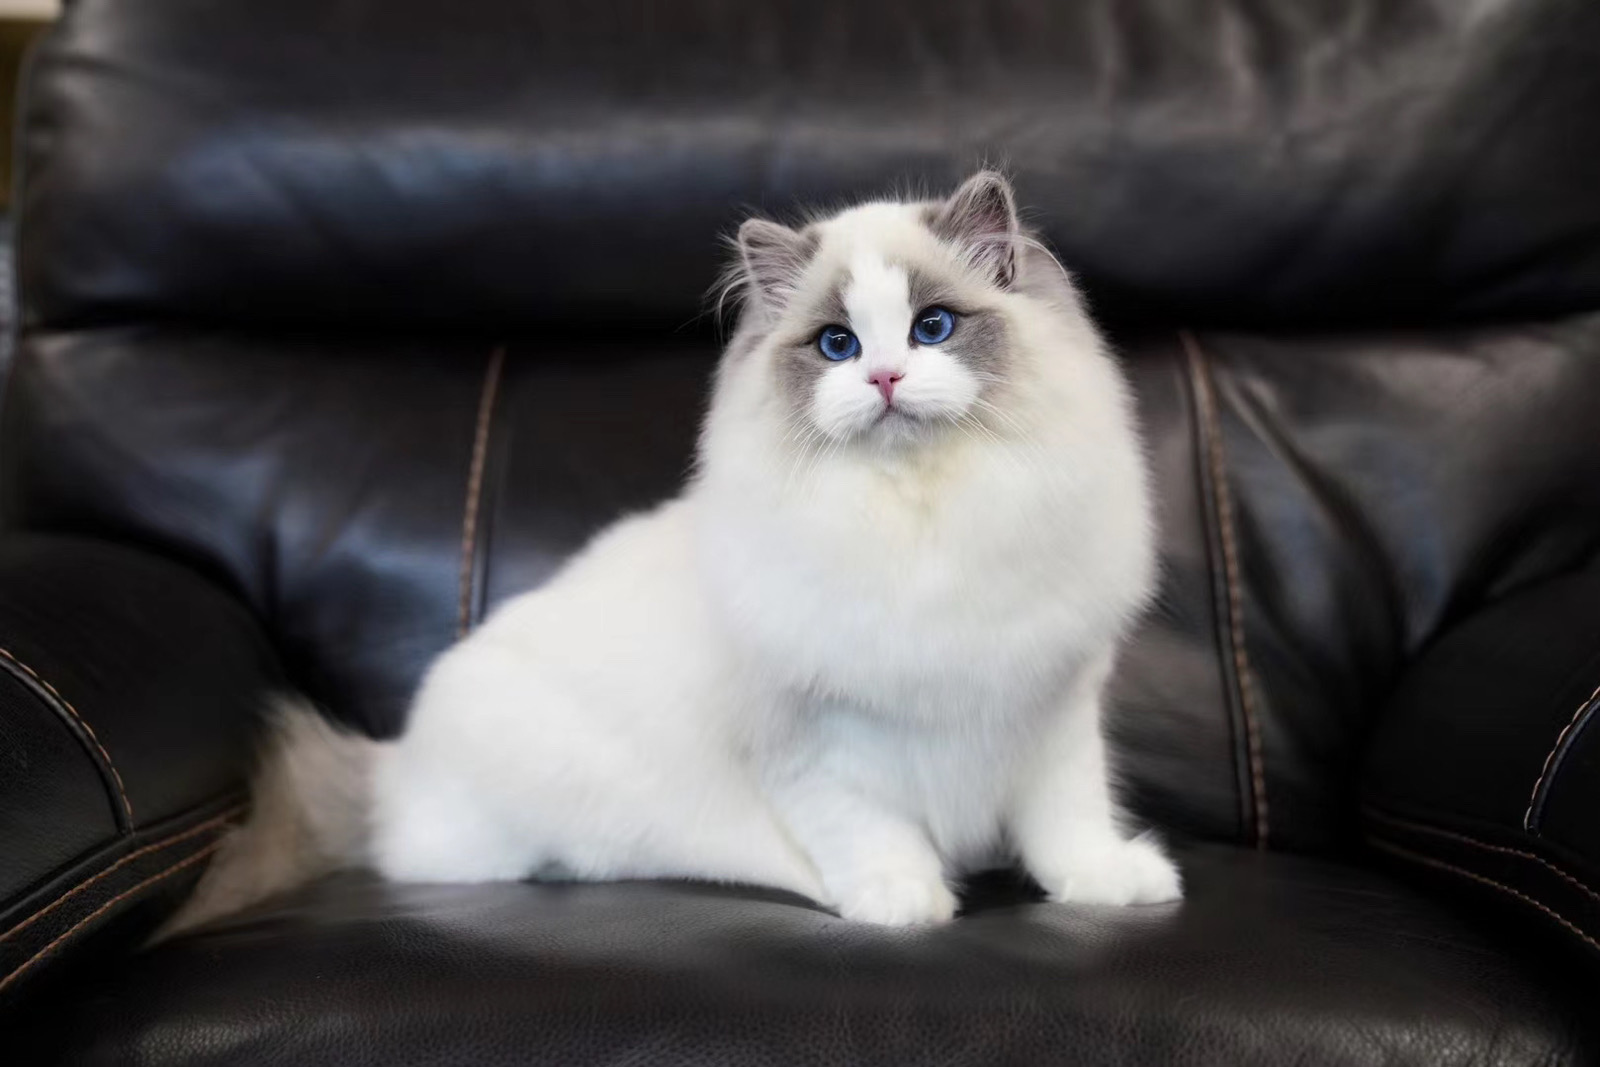 极品蓝双色布偶猫,何止美丽,没有人不喜欢她吧!